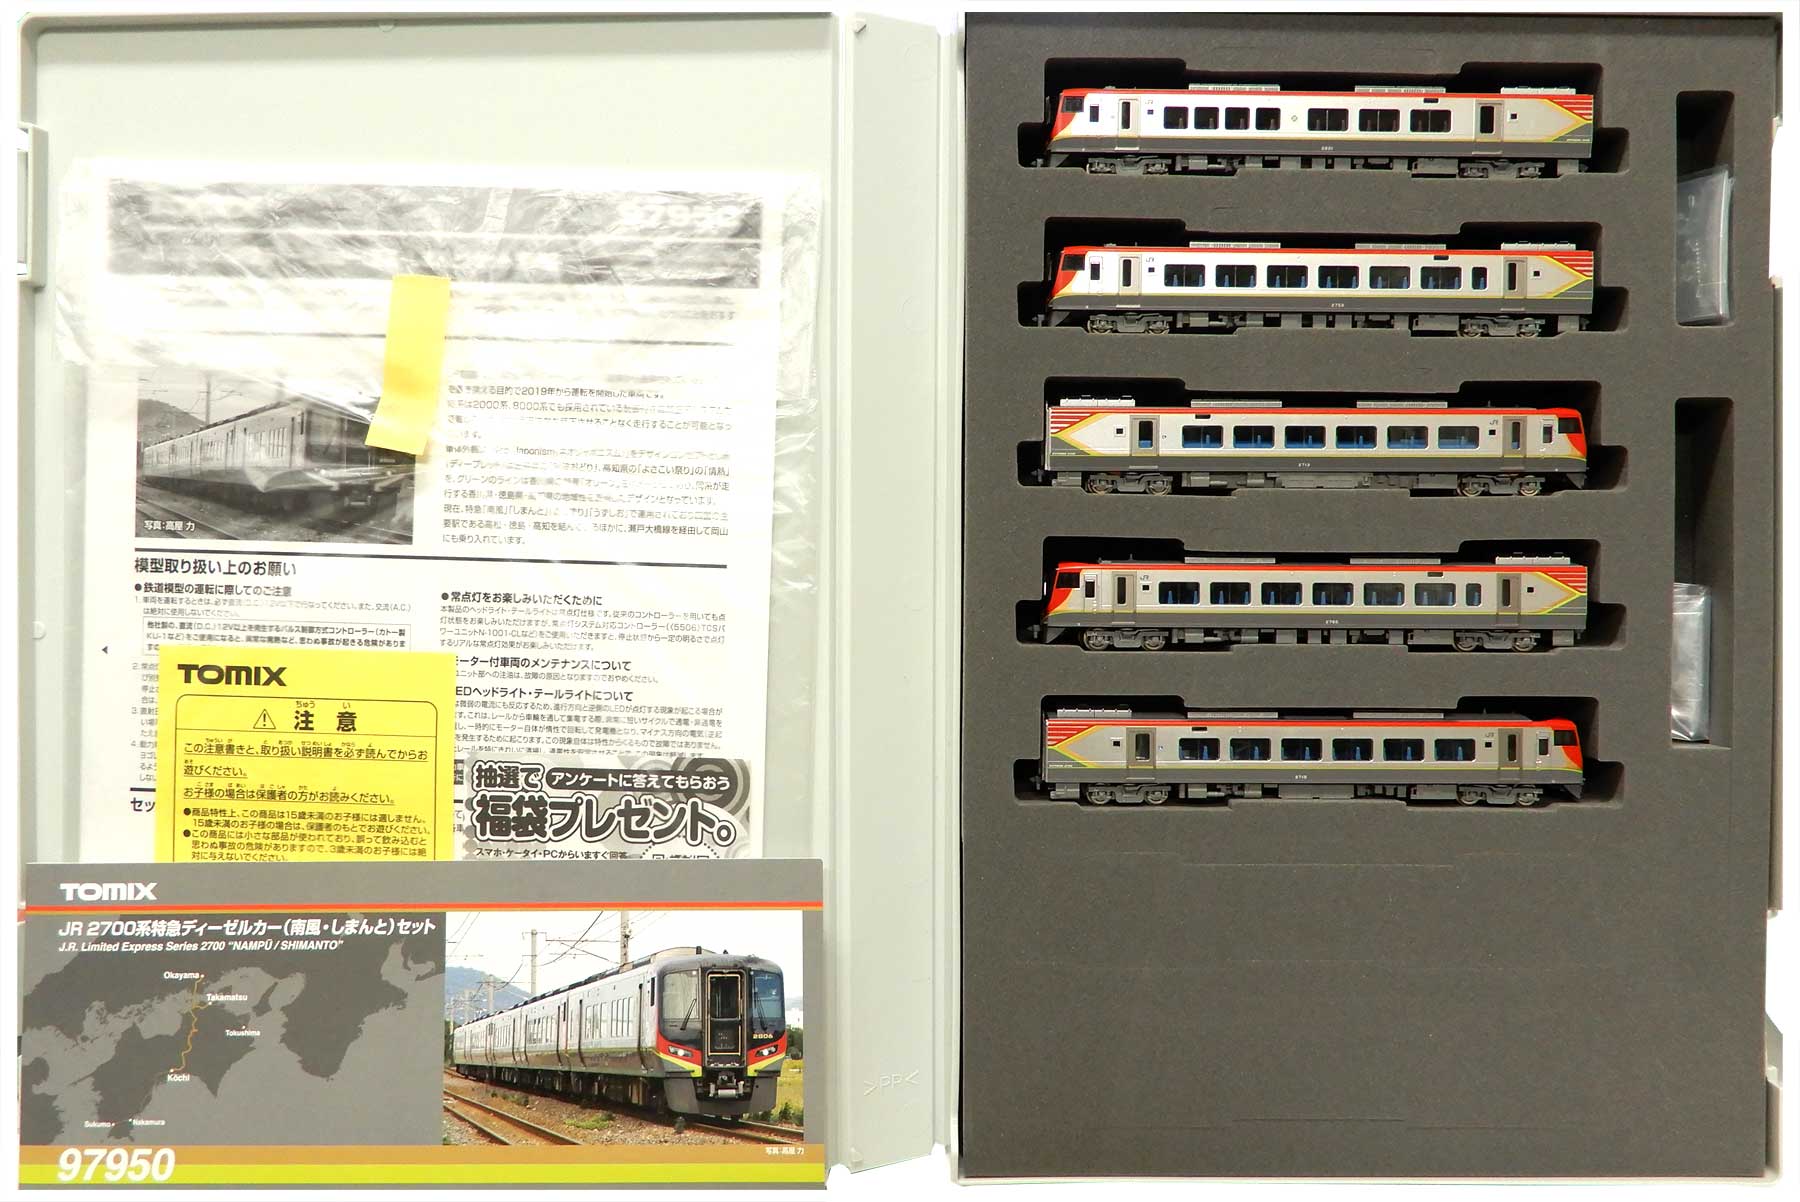 公式]鉄道模型(97950JR 2700系特急ディーゼルカー(南風・しまんと) 5両